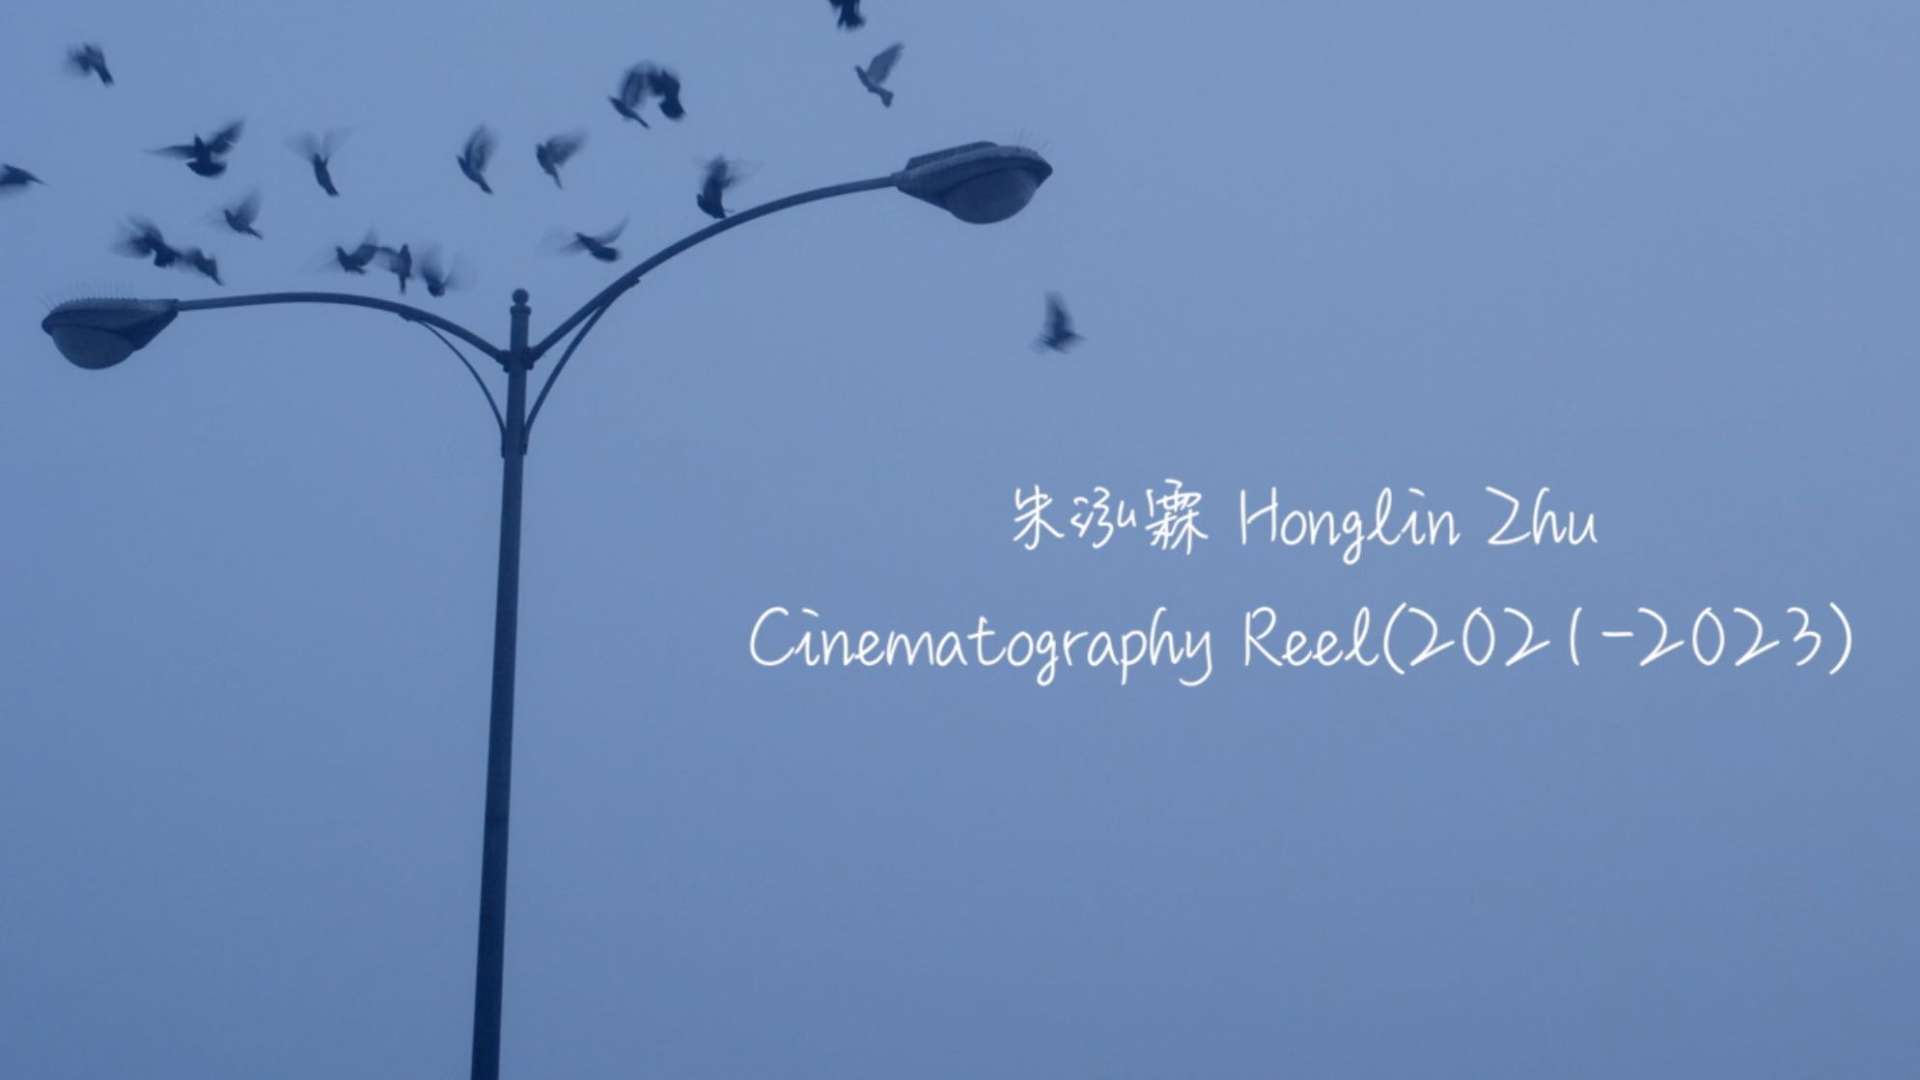 Cinematography Reel 2021-2023 朱泓霖